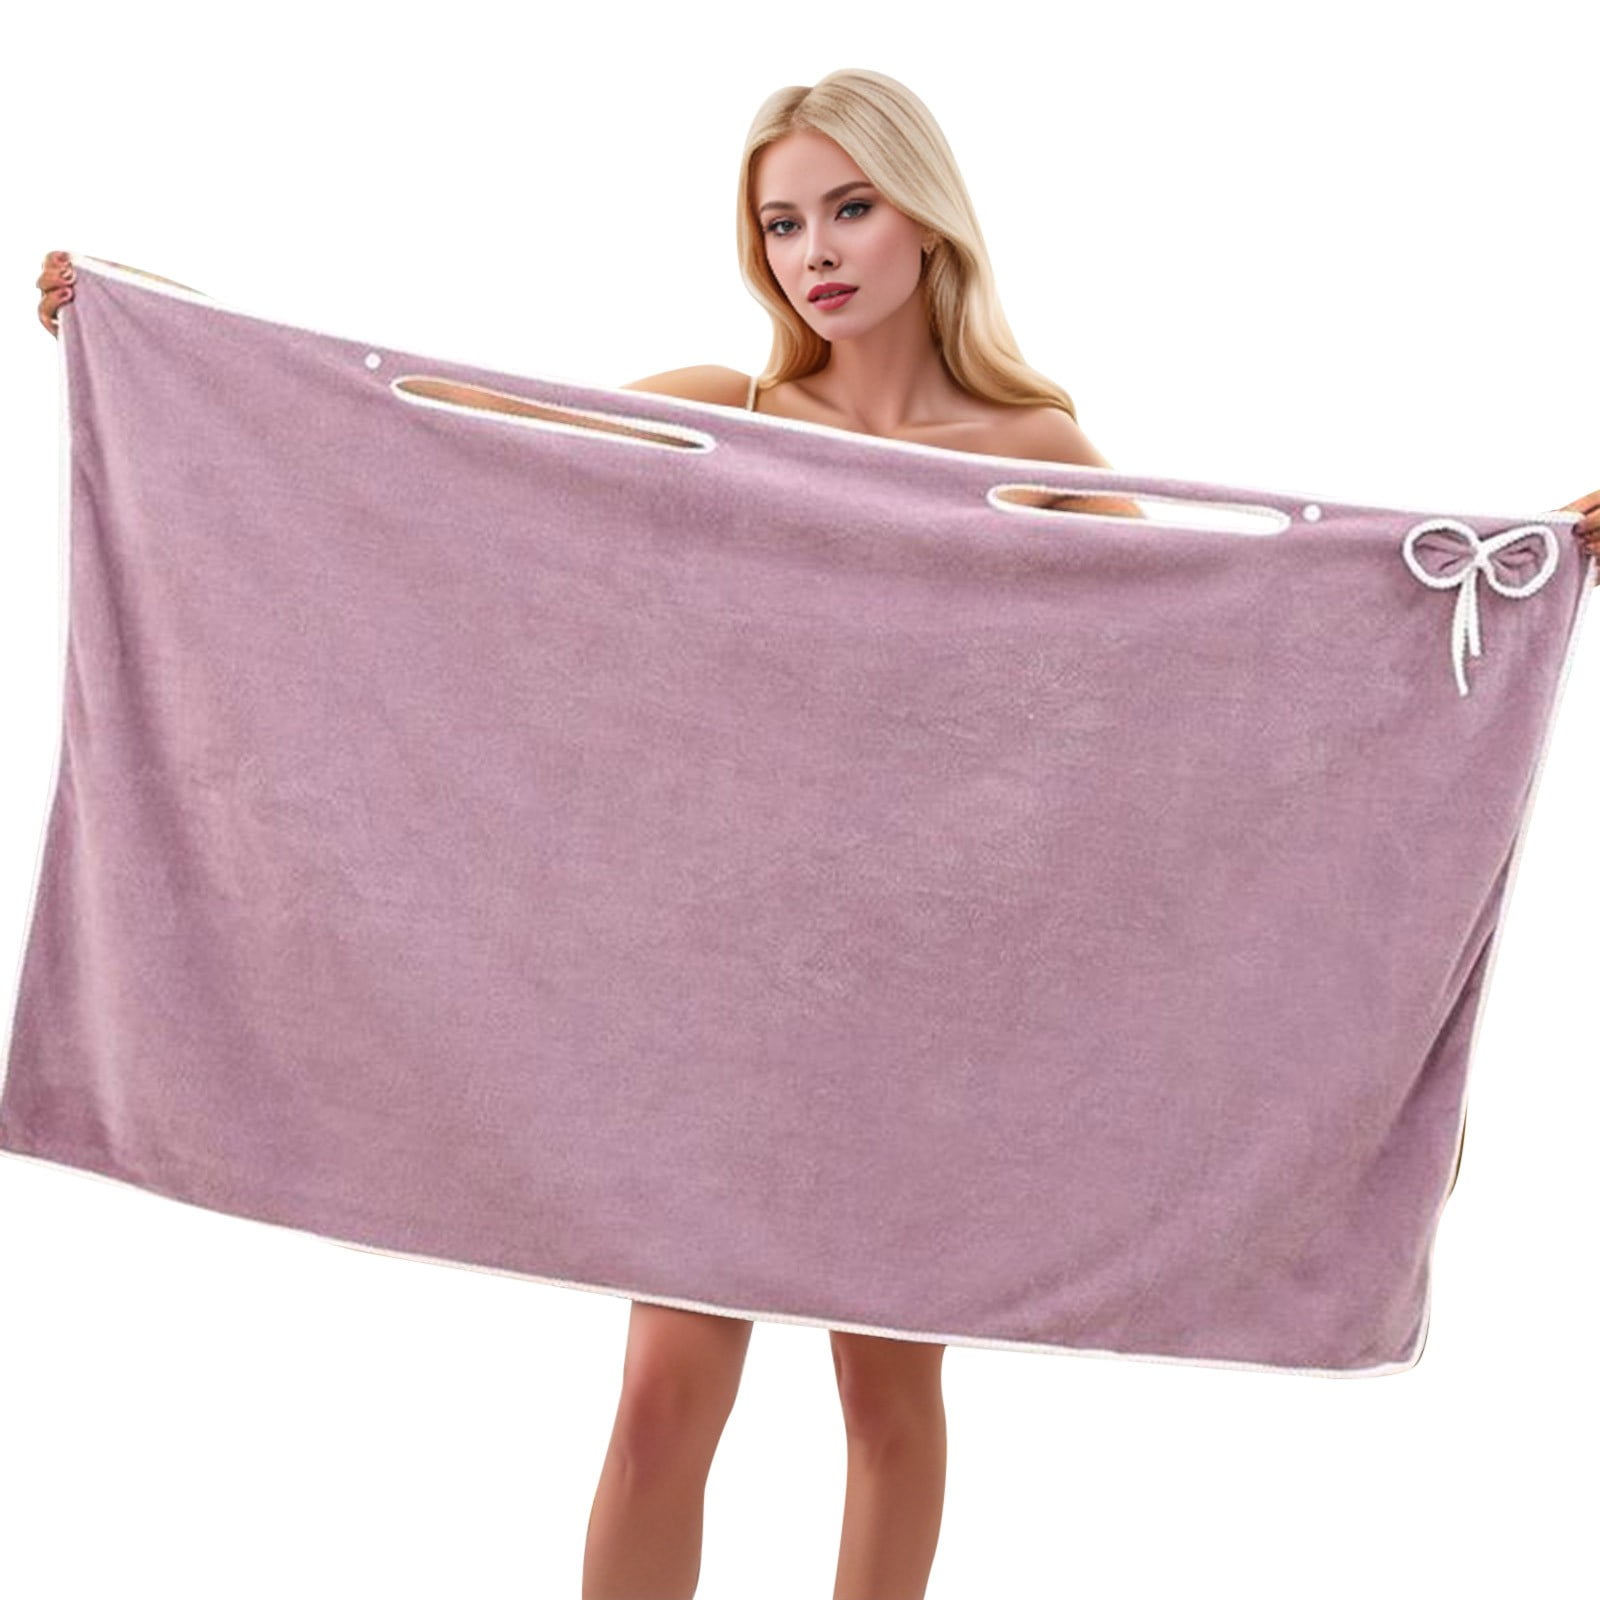 JDEFEG Women's Wearable Shower Skirt Bow Tie Water Absorption Beauty ...